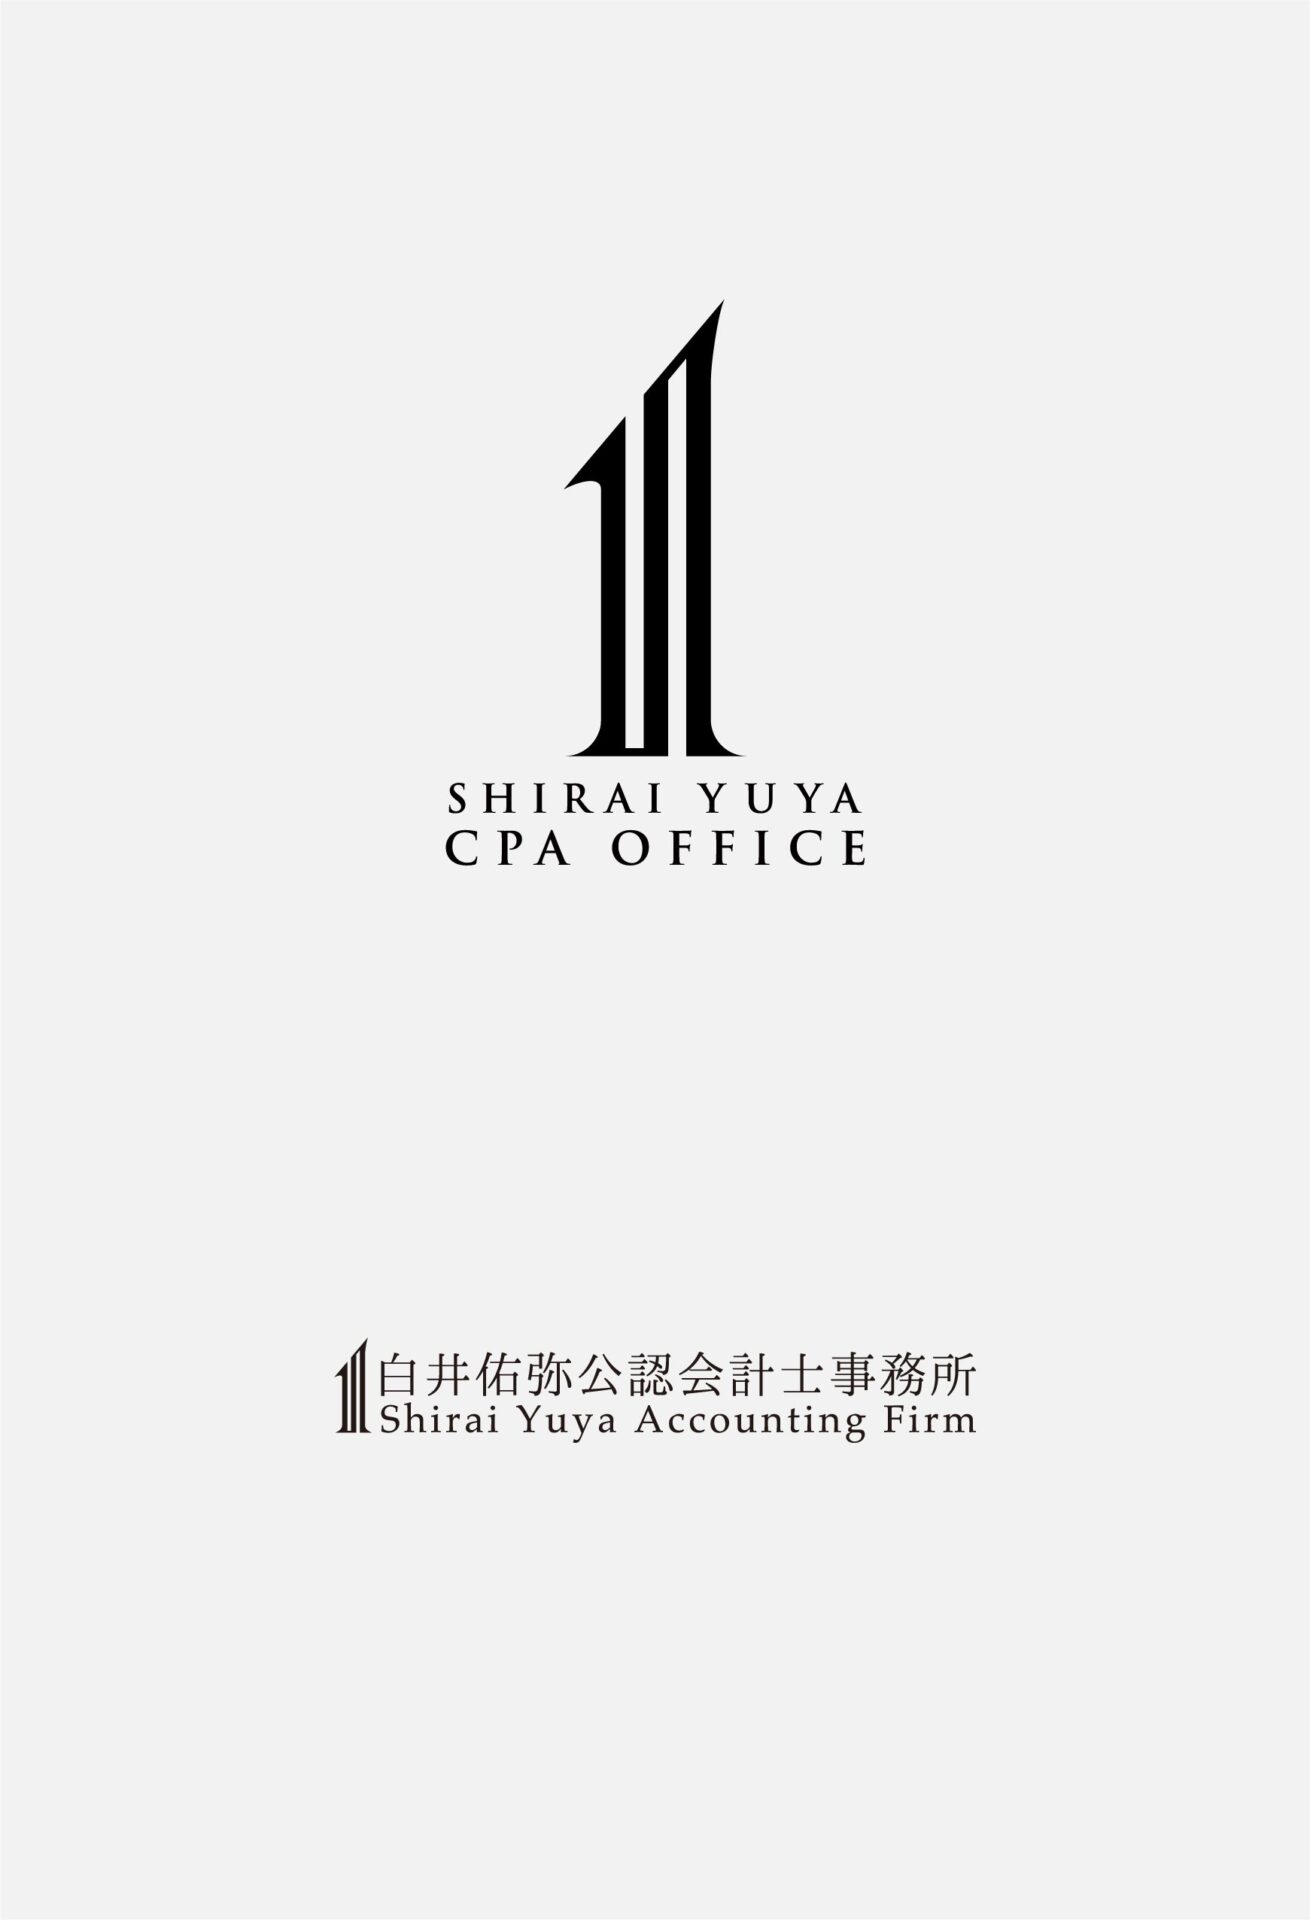 「SHIRAI YUYA  CPA OFFICE」の実績画像